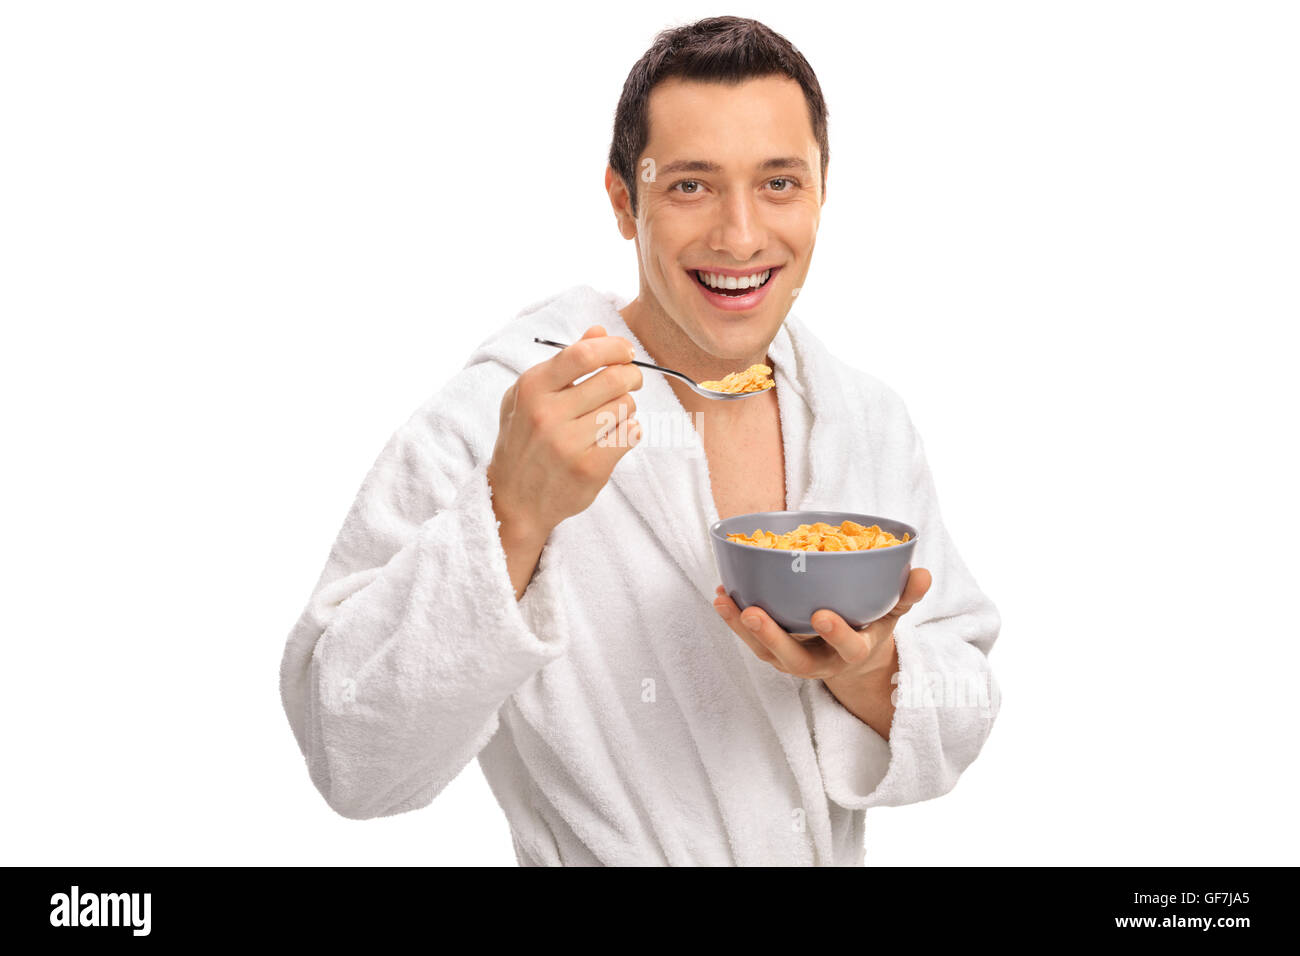 Lächelnde junge Mann isst Müsli aus einer Schüssel isoliert auf weißem Hintergrund Stockfoto